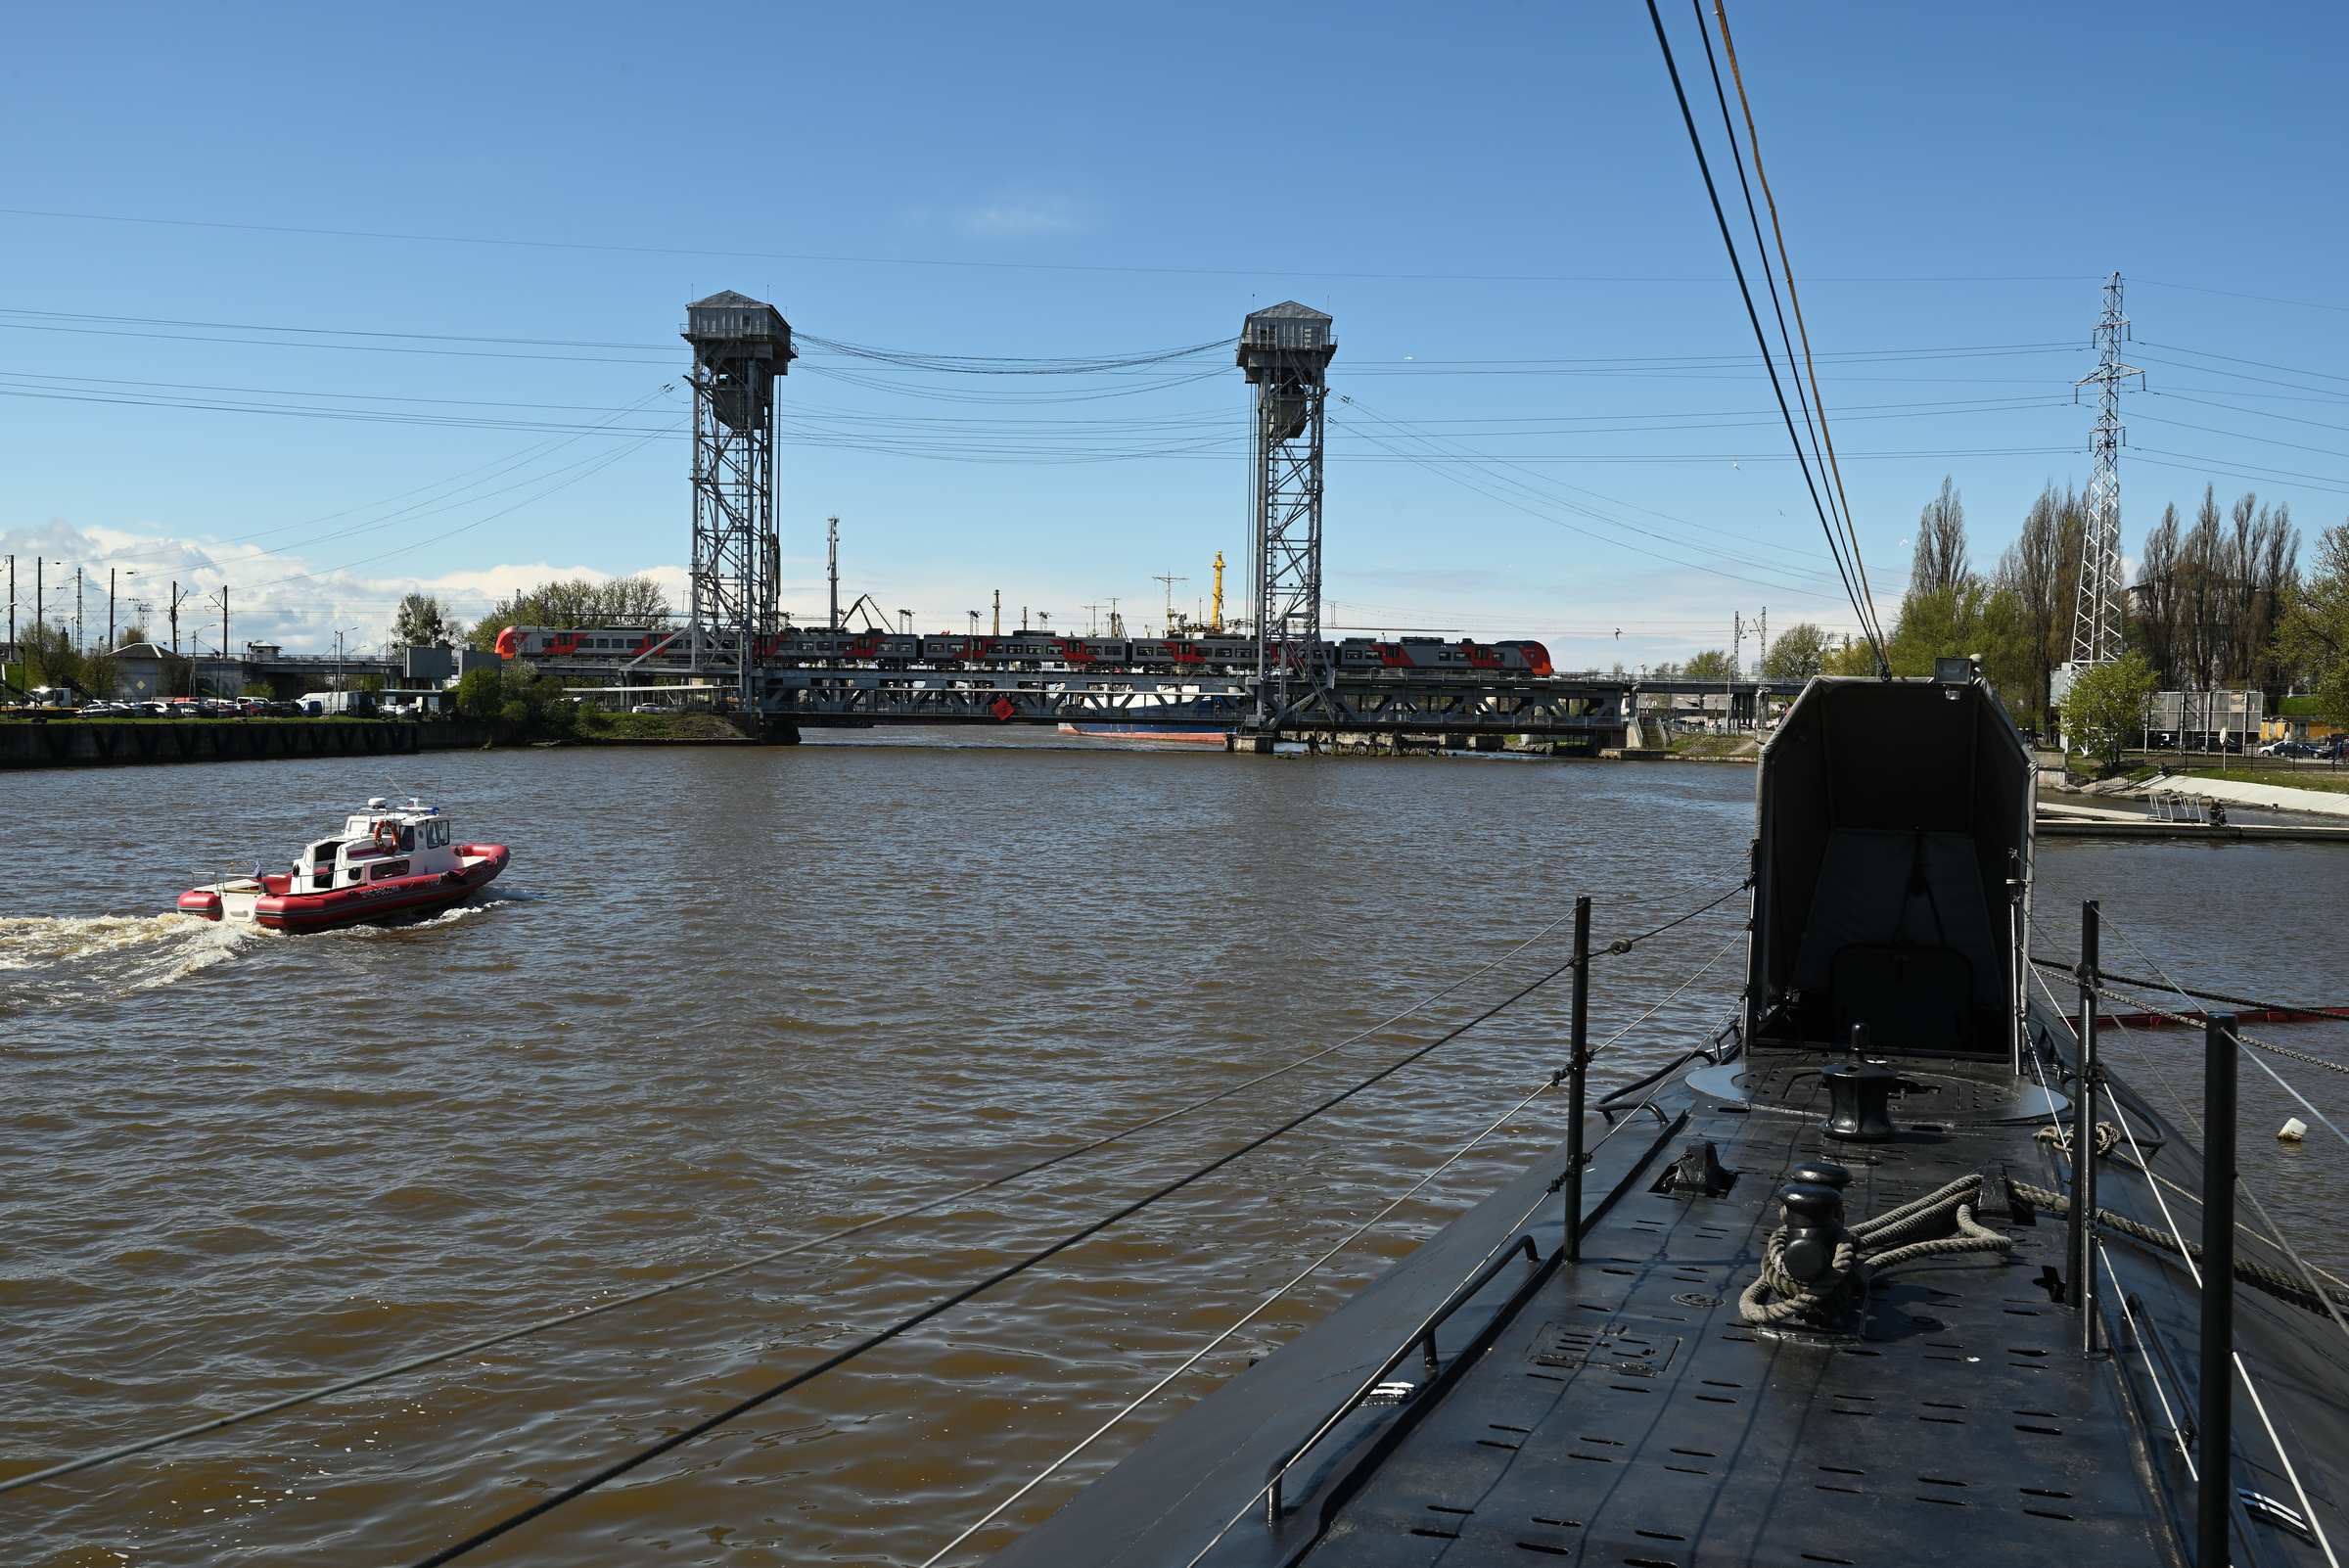 Калининград. Музей Мирового океана. Река Преголя и Двухъярусный мост с палубы подводной лодки Б-413.